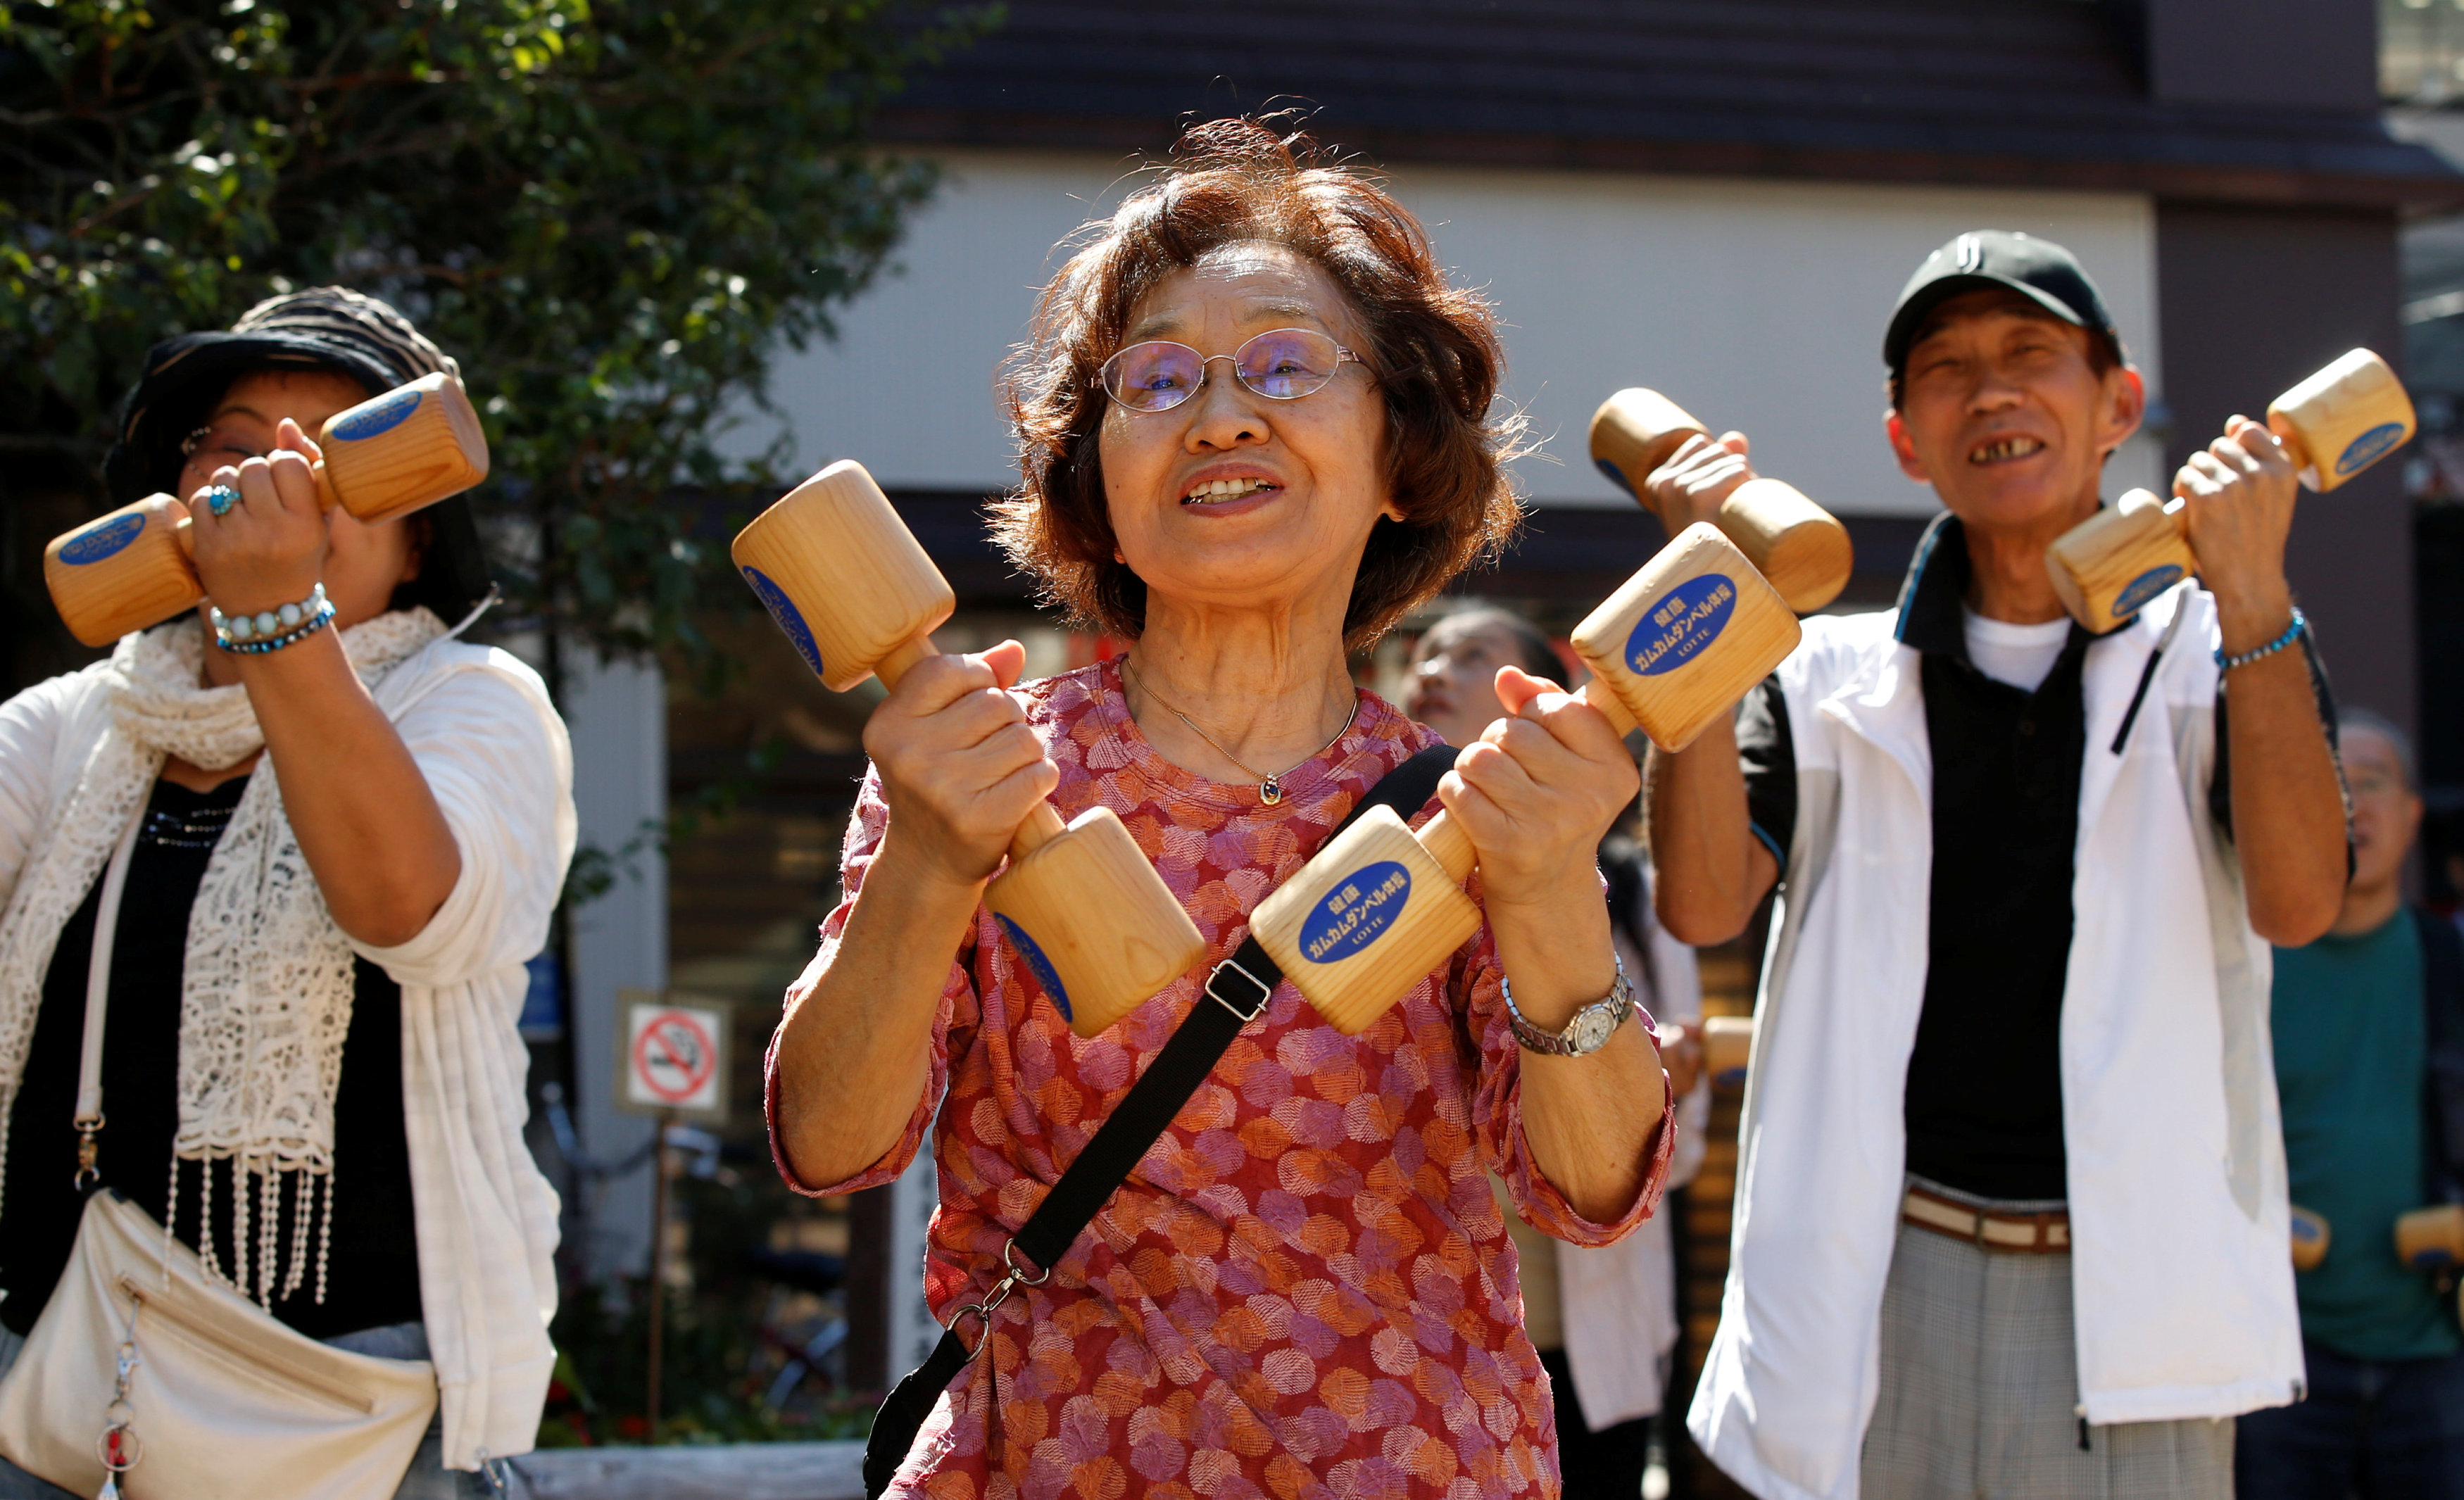 انطلاق احتفال اليابان بعيد احترام المسنين بلعب الرياضة والرقص